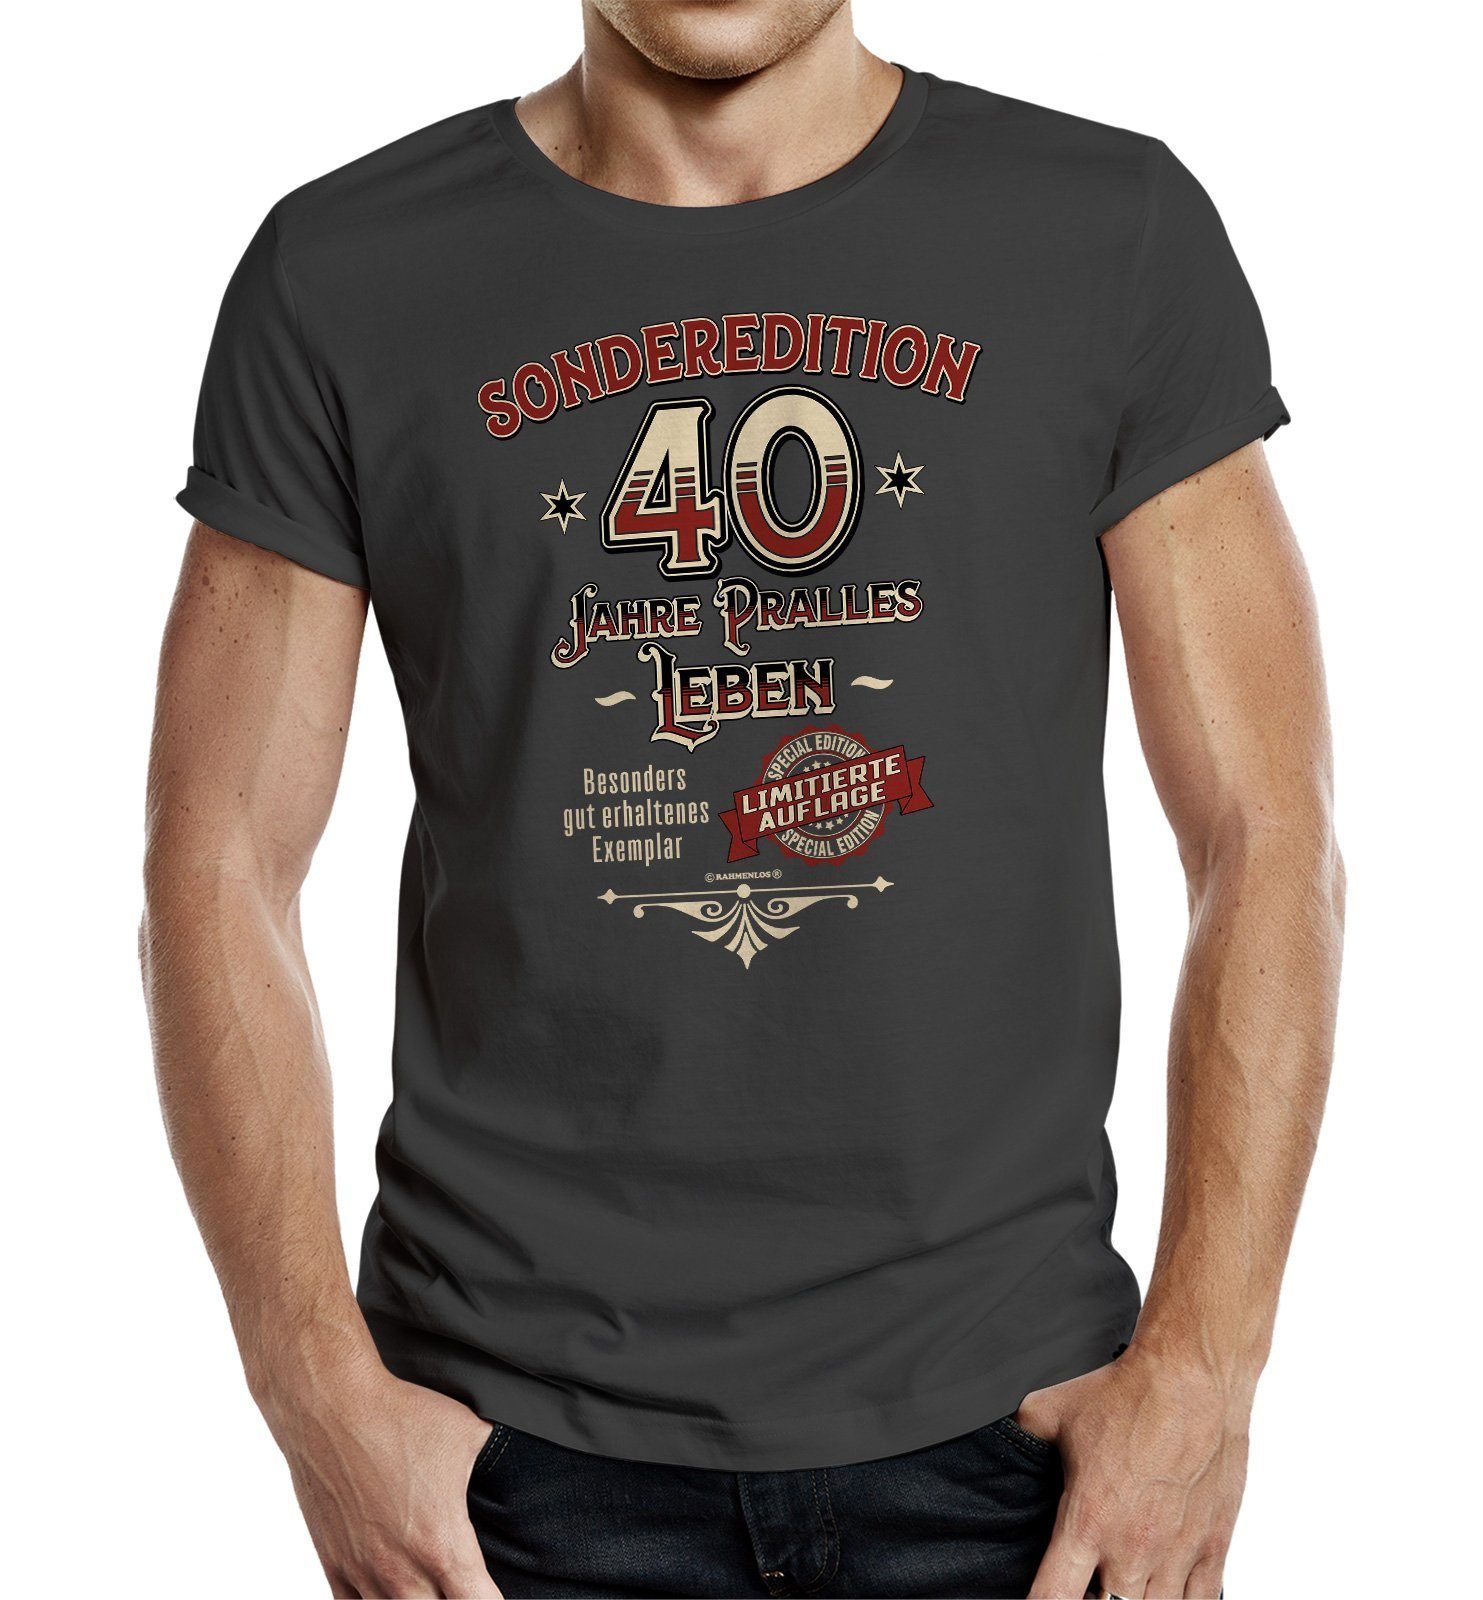 RAHMENLOS® T-Shirt Geschenk zum 40. Geburtstag - Sonderedition 40 Jahre pralles Leben